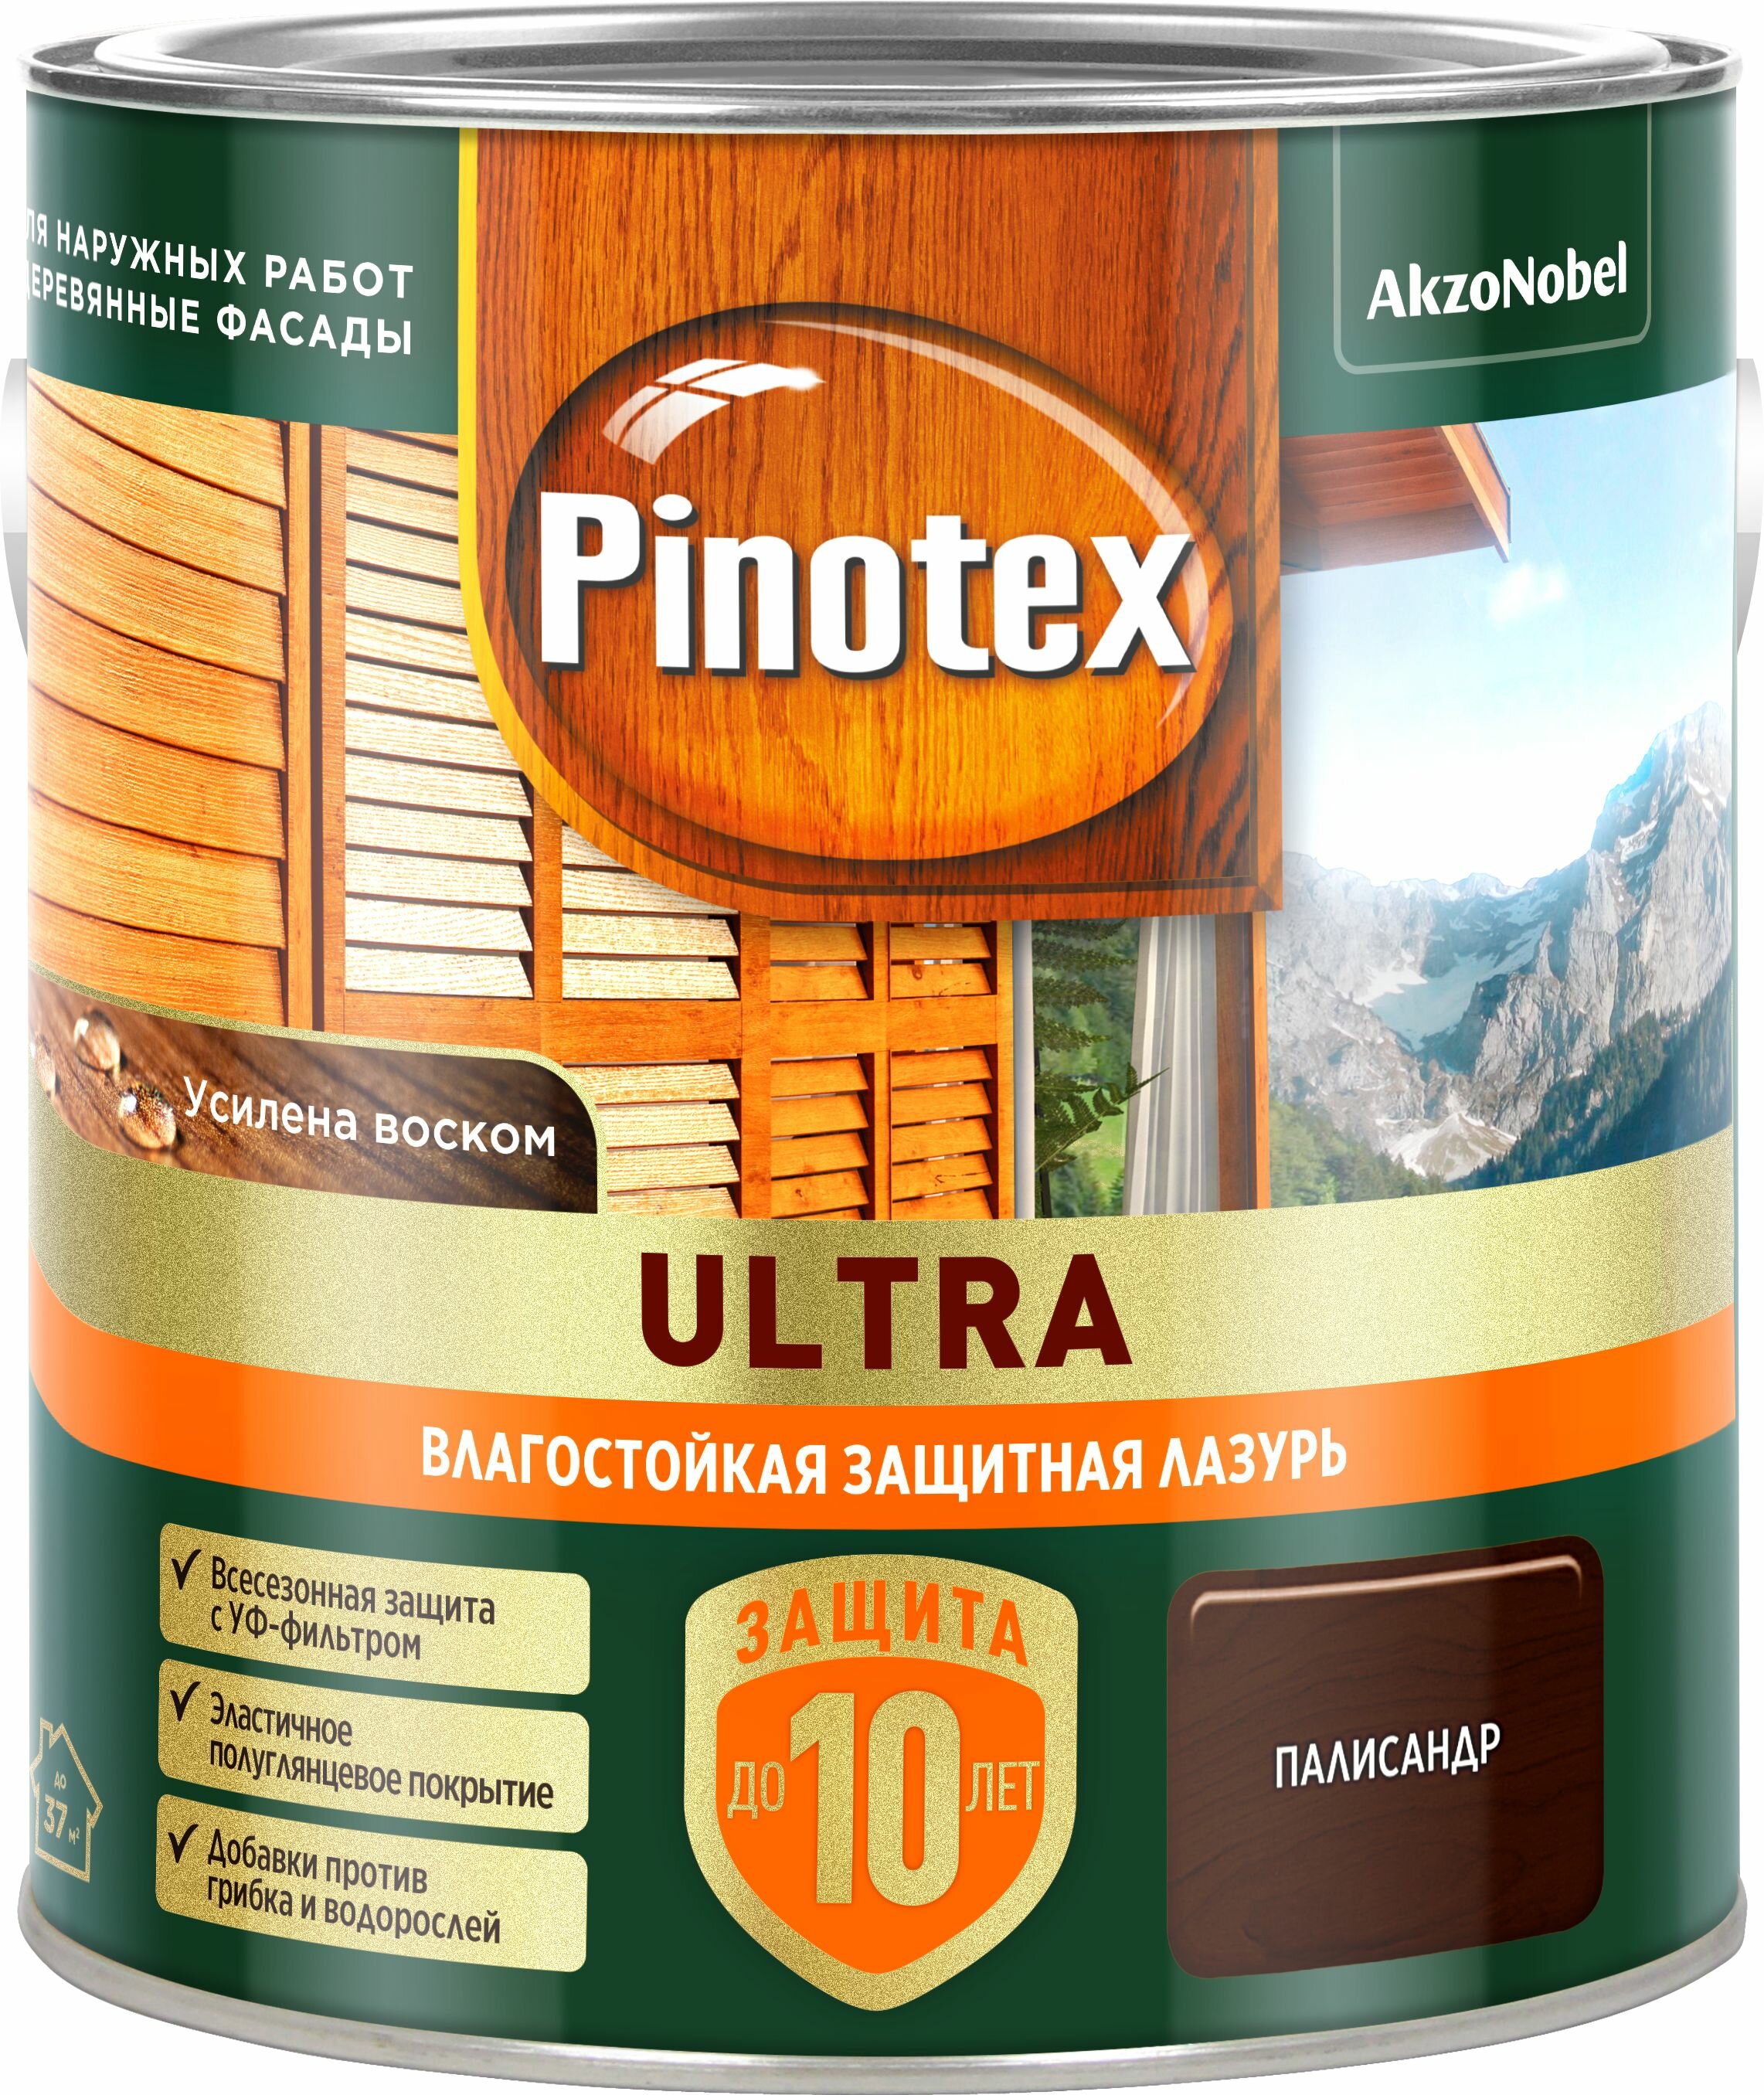 Pinotex пропитка Ultra